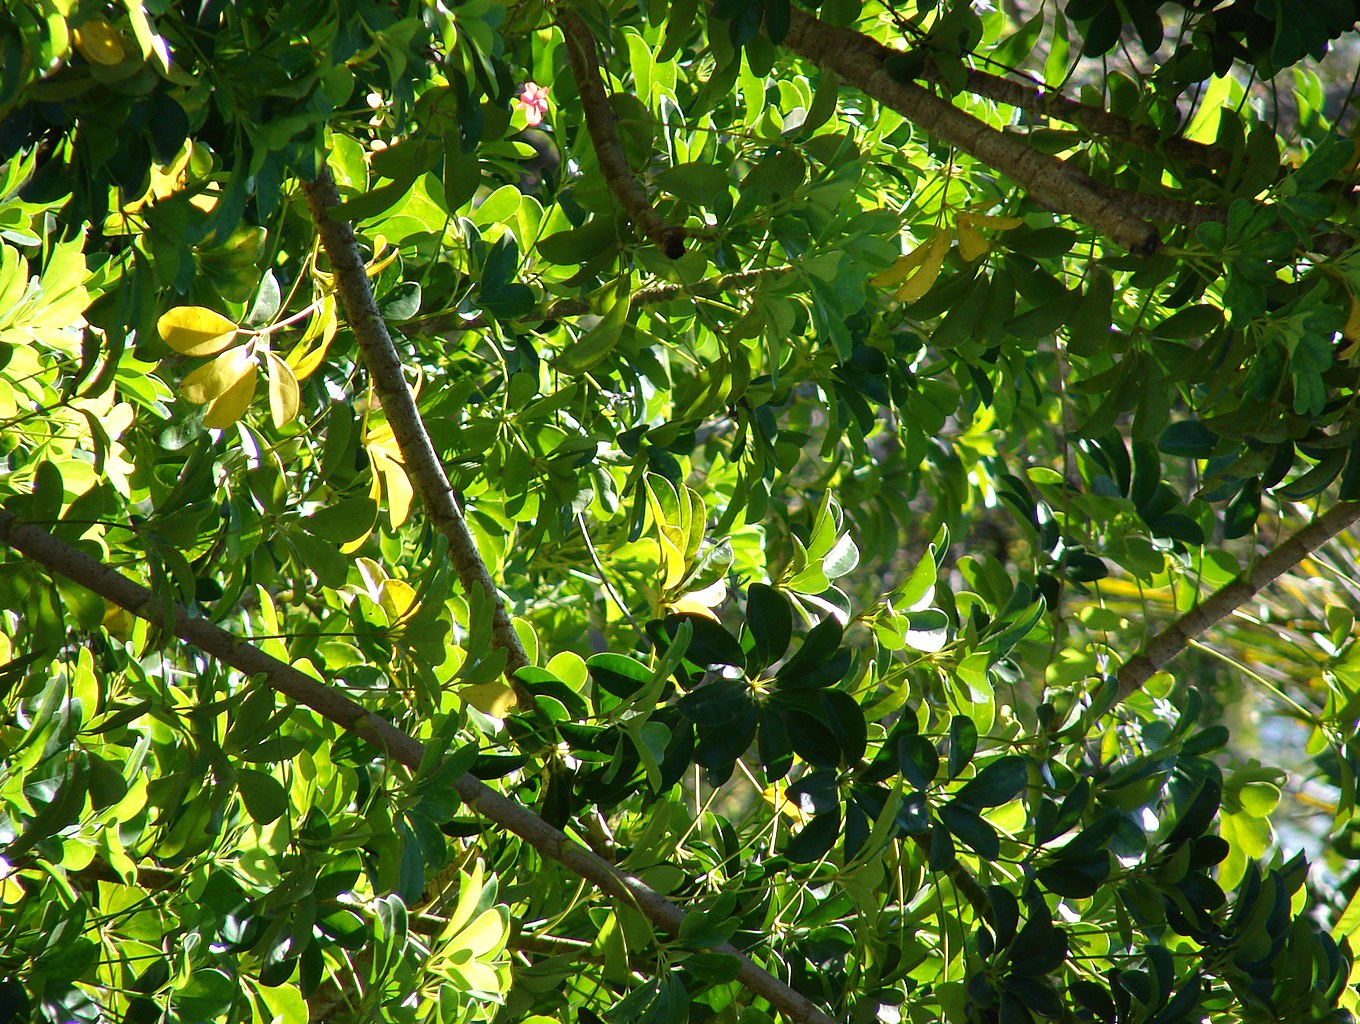 Schefflera arboricola growing in a jungle canopy.